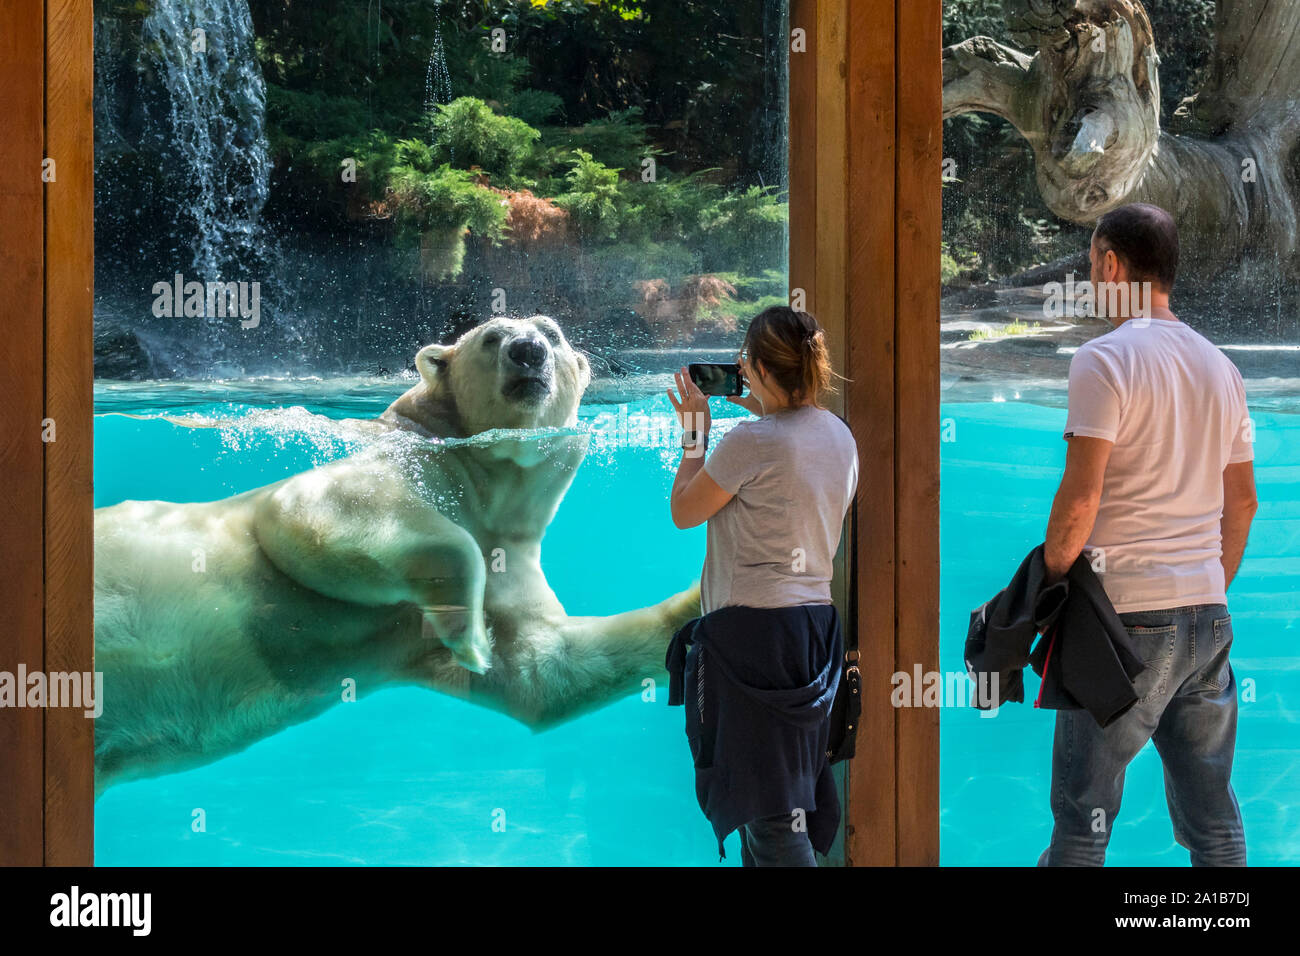 Besucher Aufnehmen von Bildern mit Smartphone, während riesige Eisbären (Ursus maritimus/Thalarctos maritimus) schwimmen Vergangenheit ist, Zoo de La Flèche, Frankreich Stockfoto